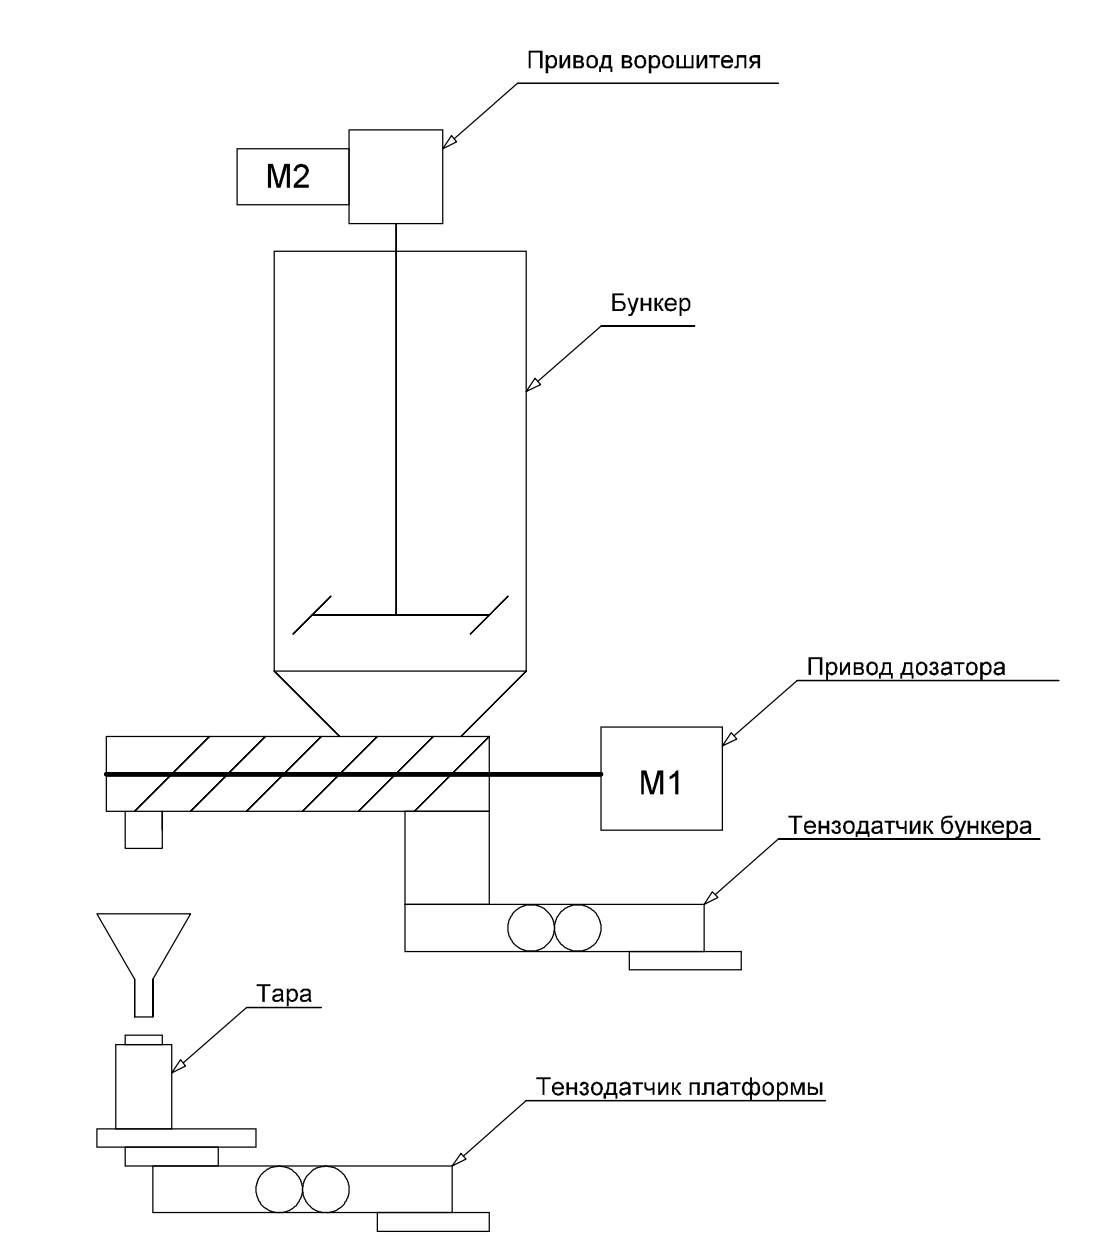 Структурная схема дозатора